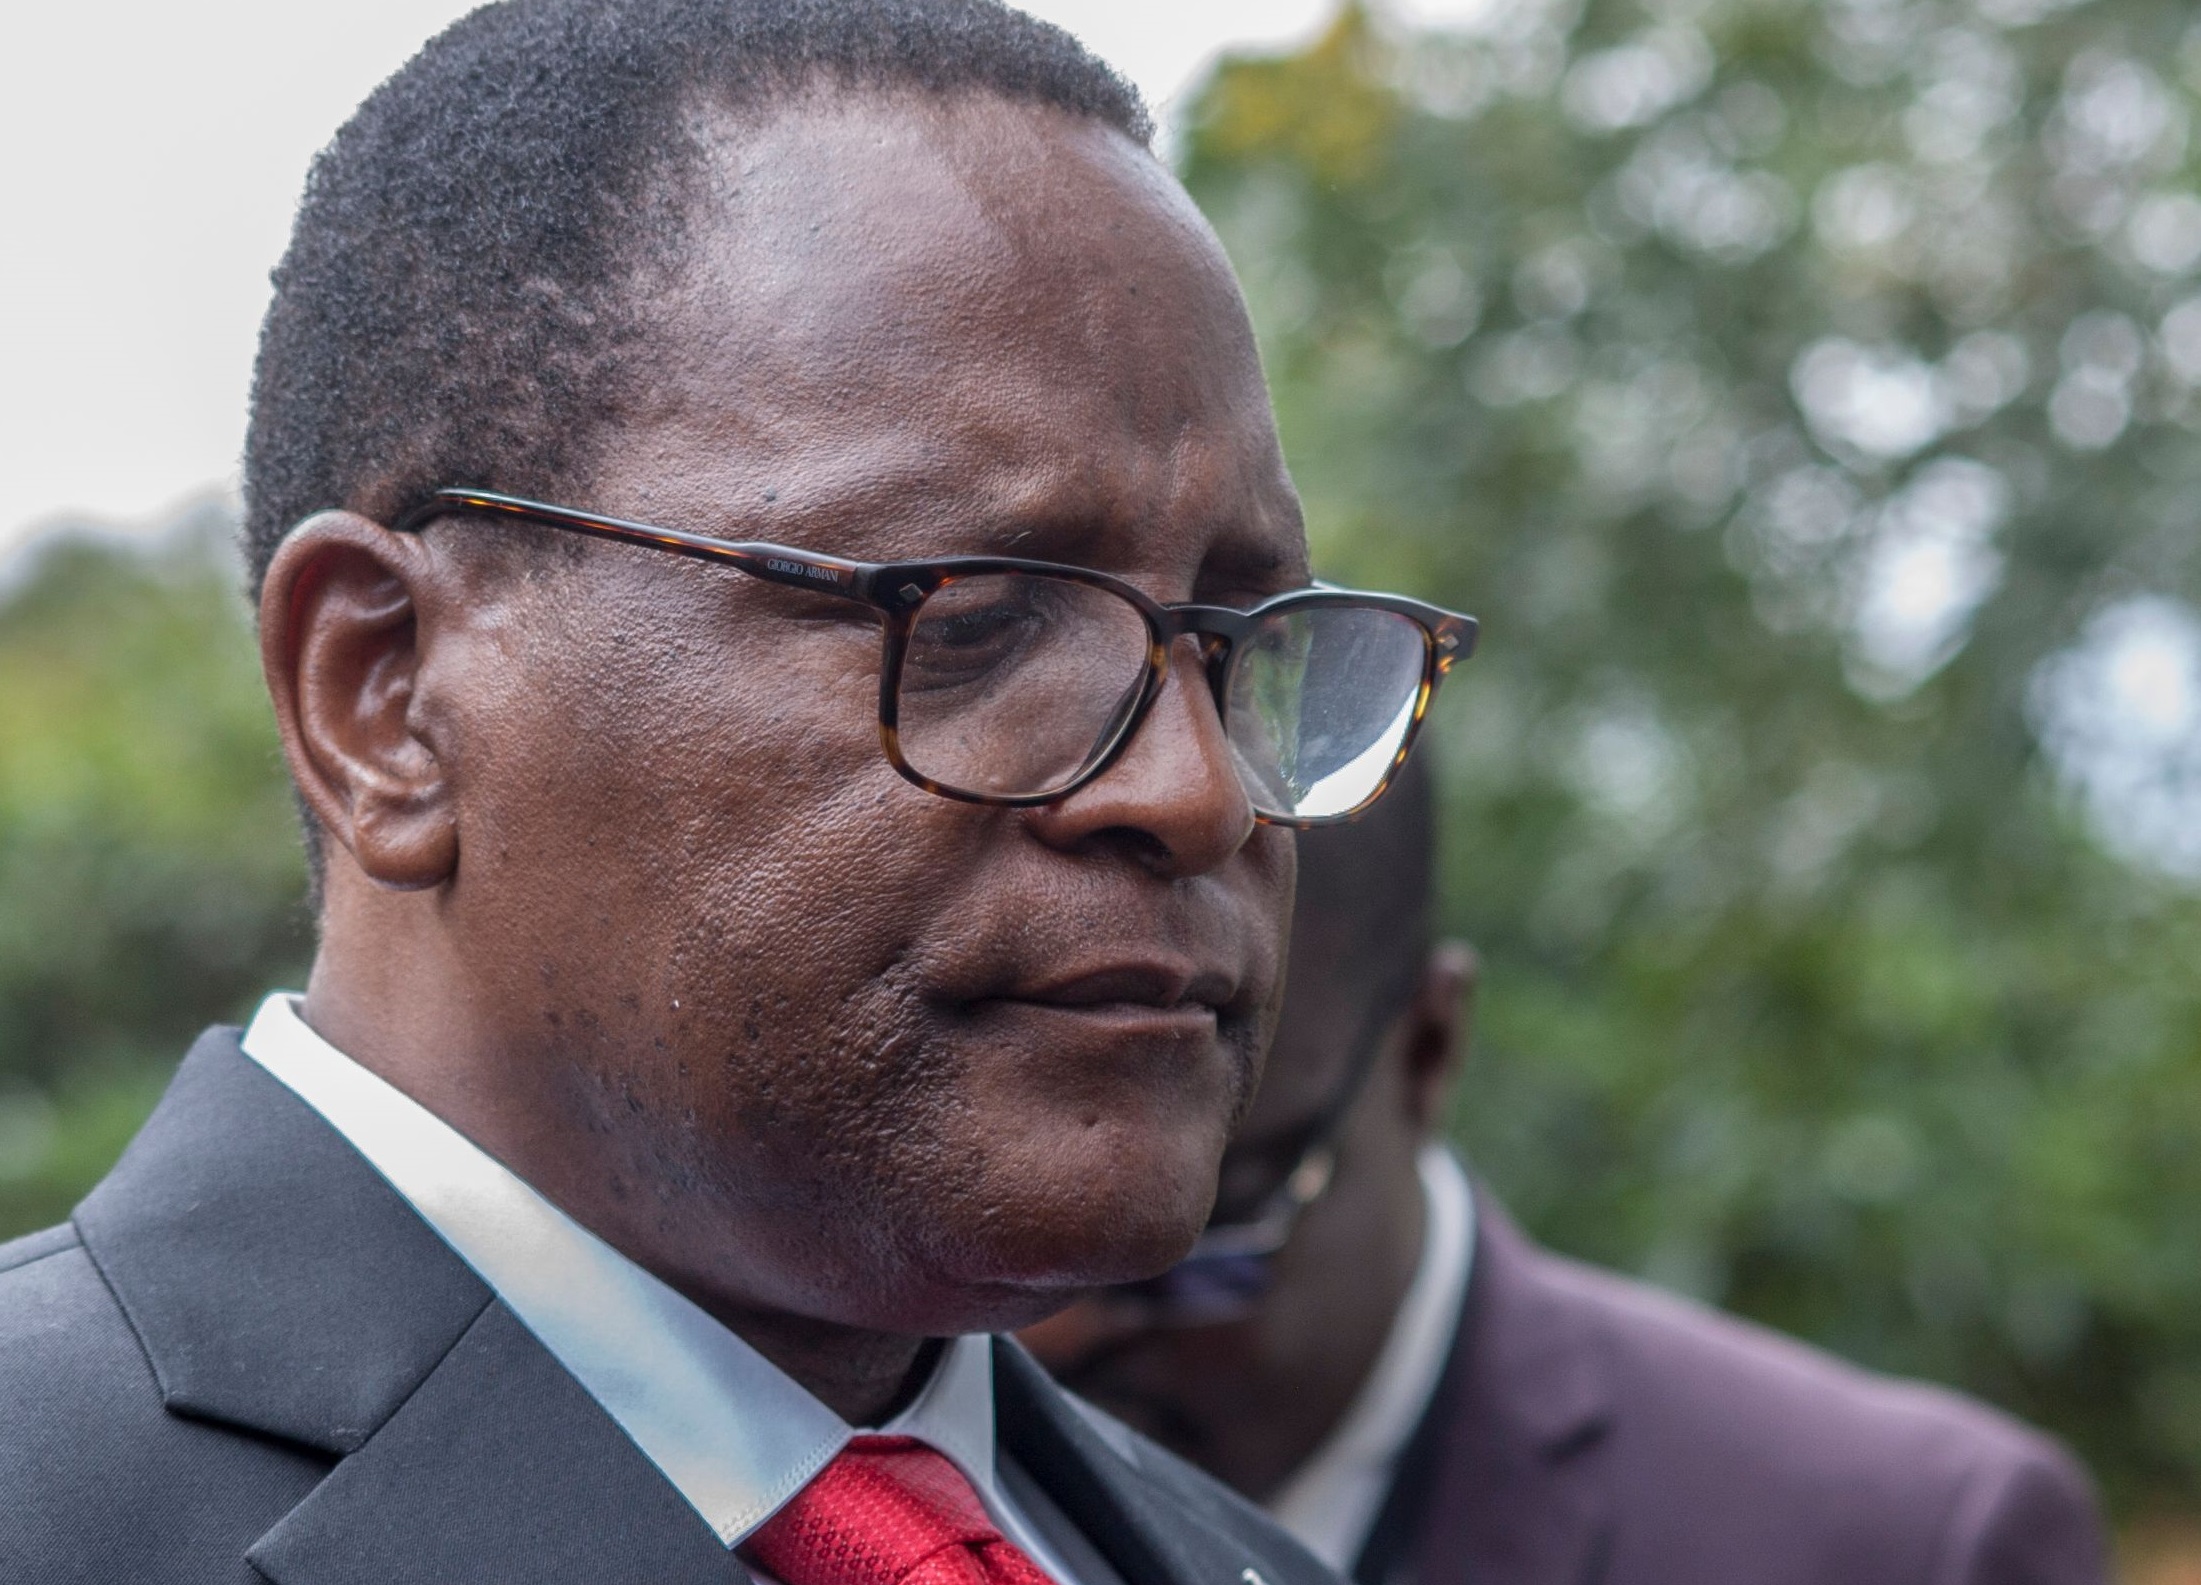 Lazarus Chakwera: Malawi's president who 'argued with God'